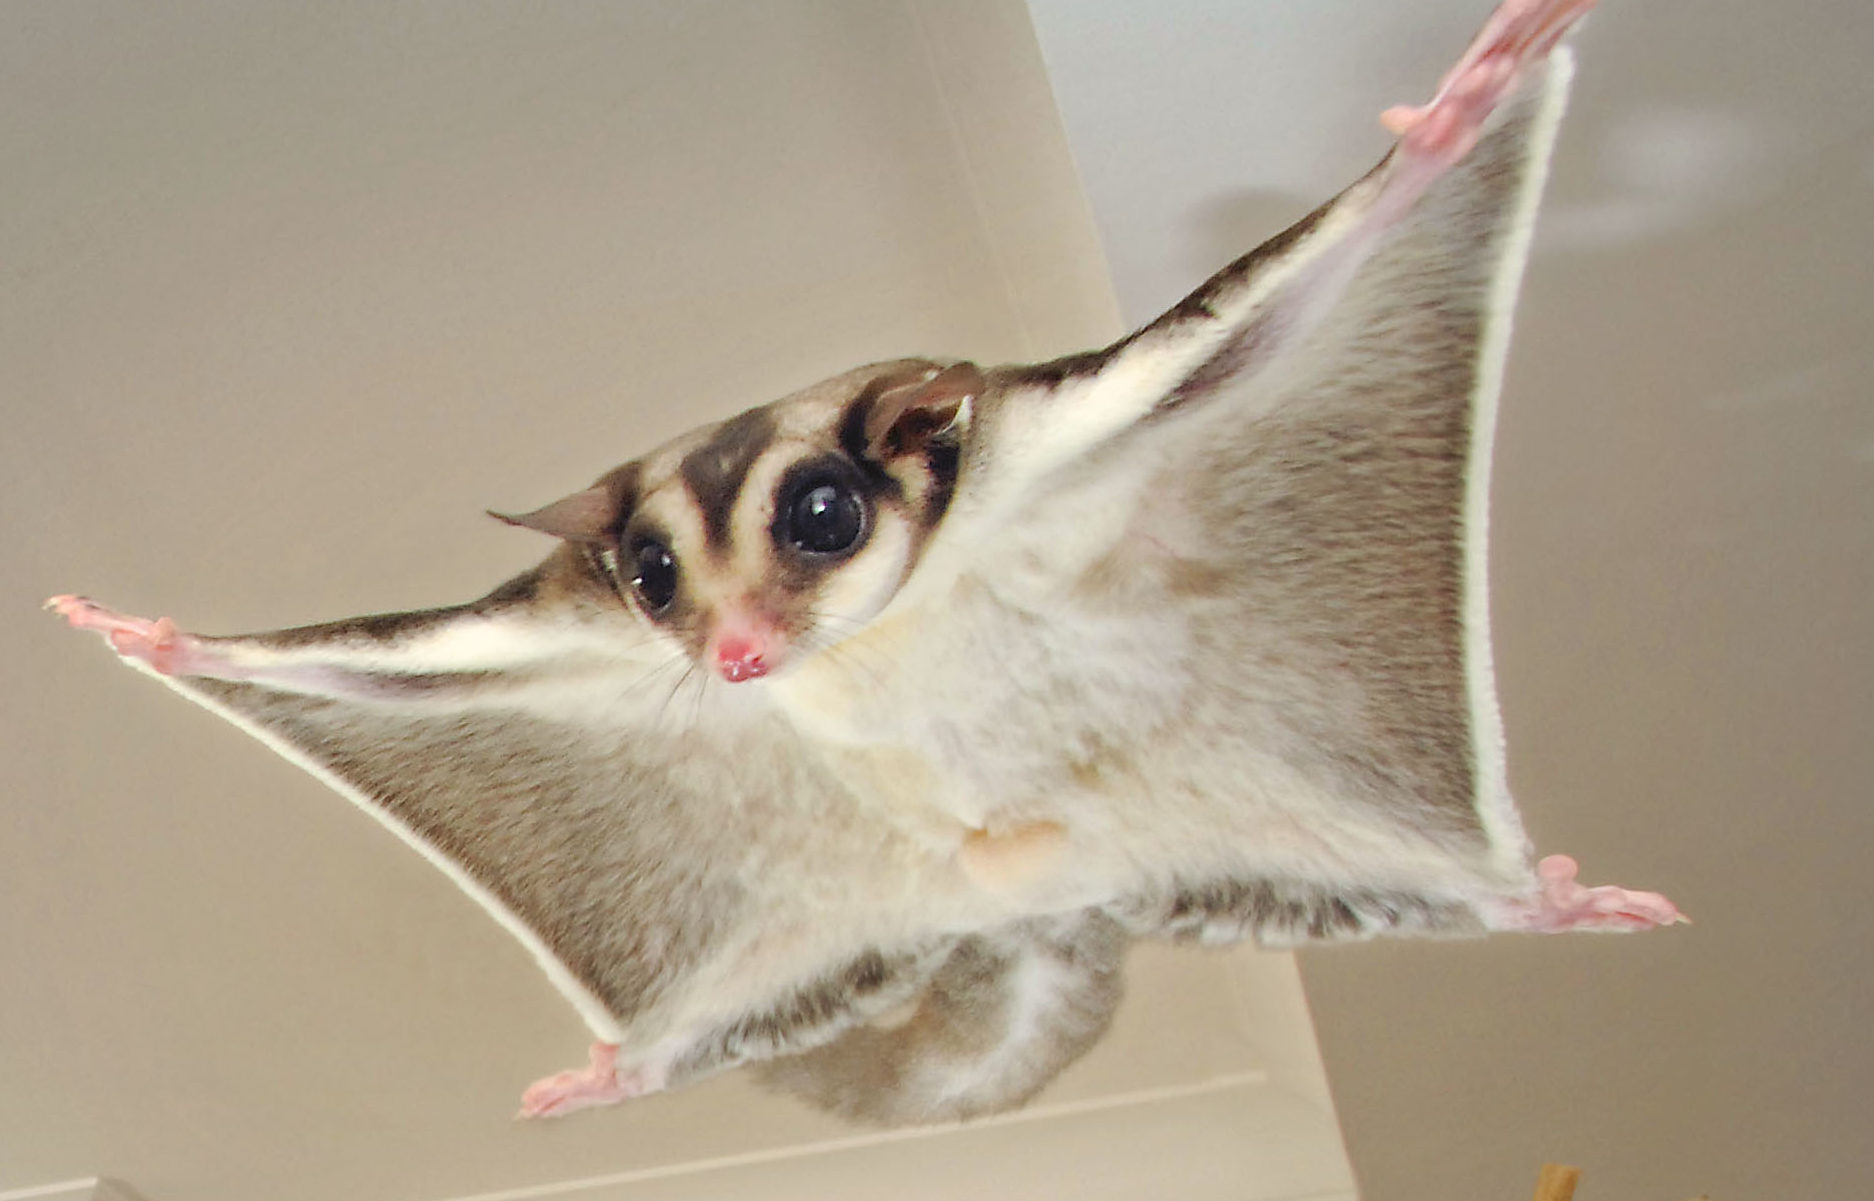 A sugar glider possum